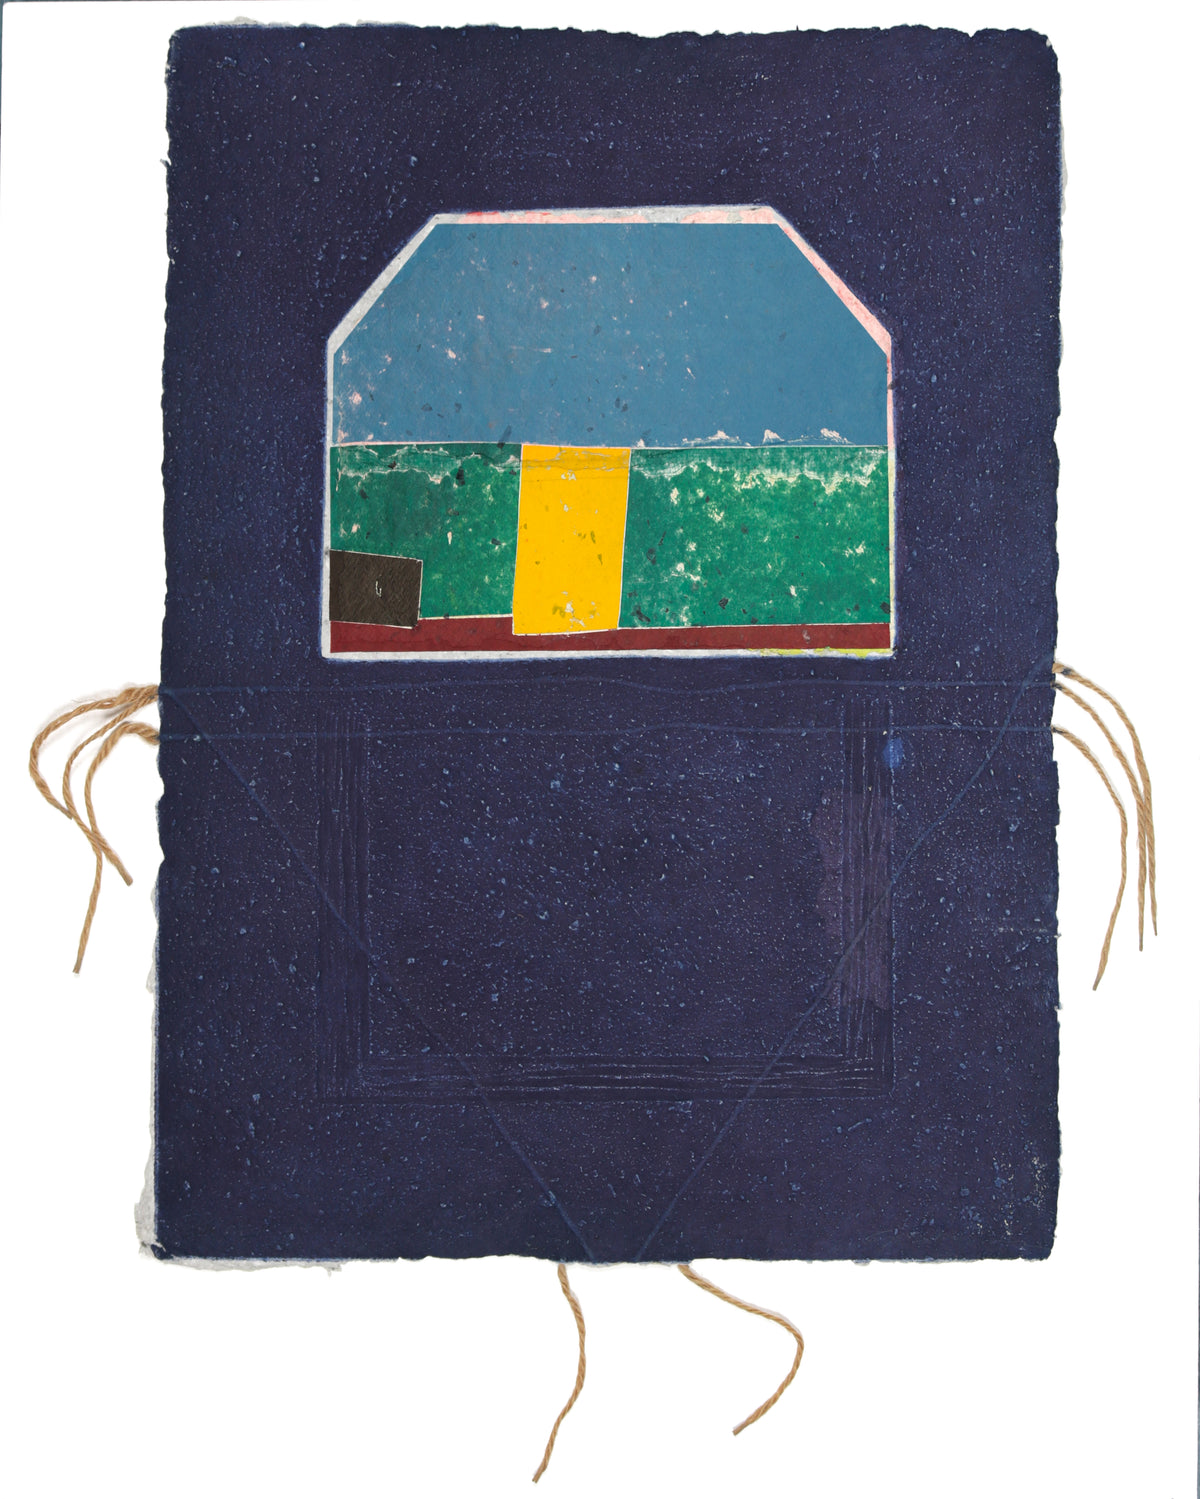 &lt;i&gt;House Grid&lt;/i&gt; &lt;br&gt;1984 Collograph on Handmade Paper with String &lt;br&gt;&lt;br&gt;#93460